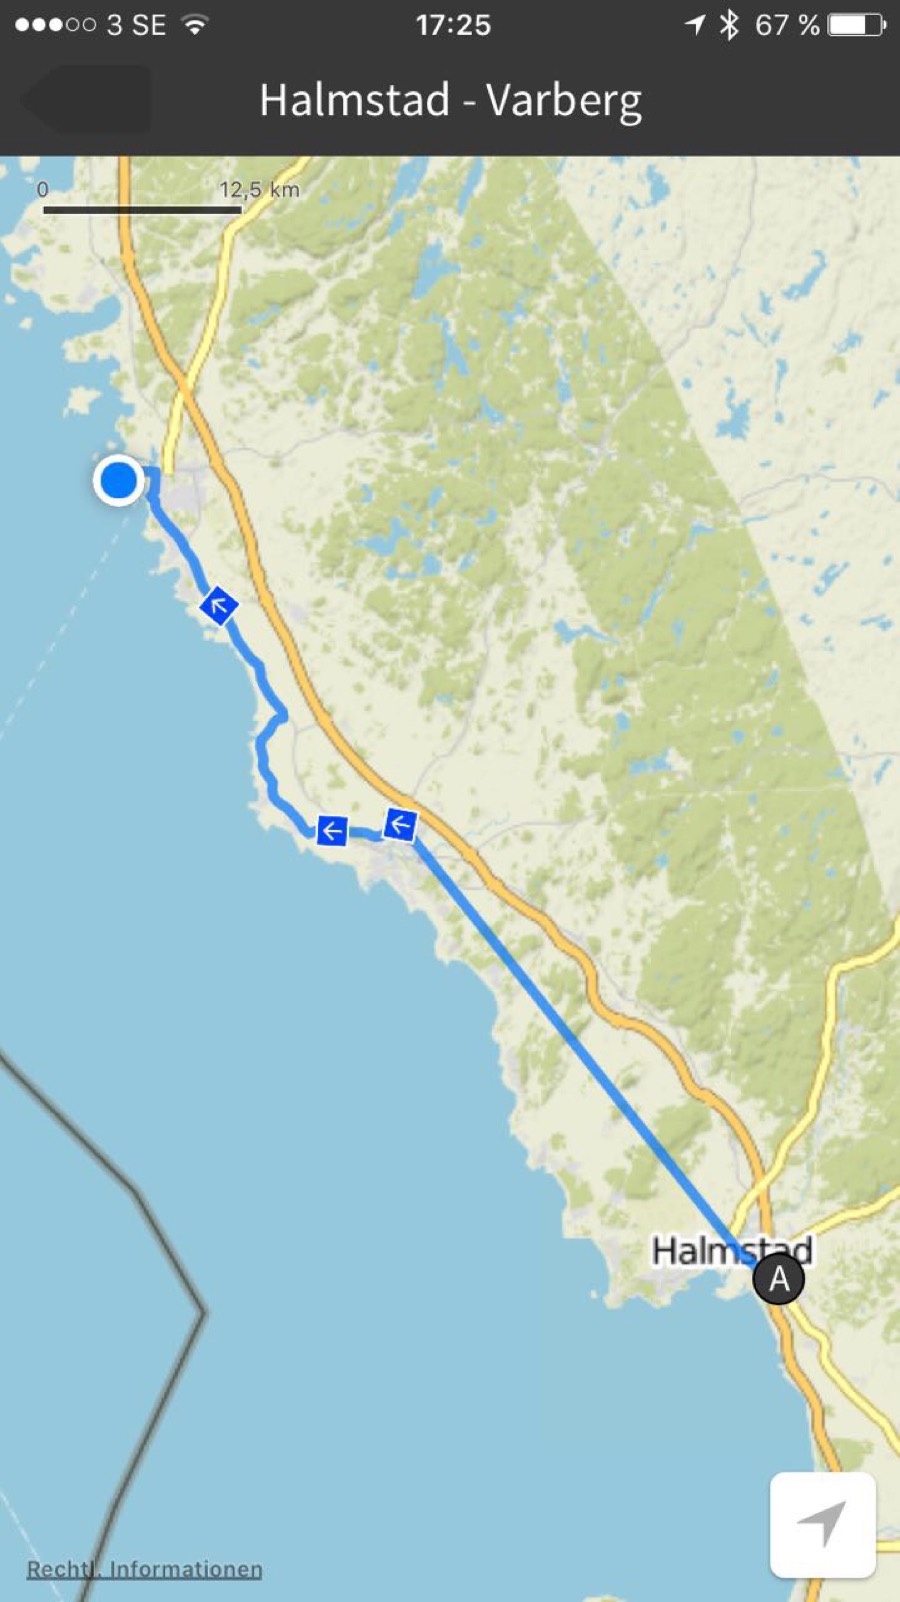 Halmstad - Varberg